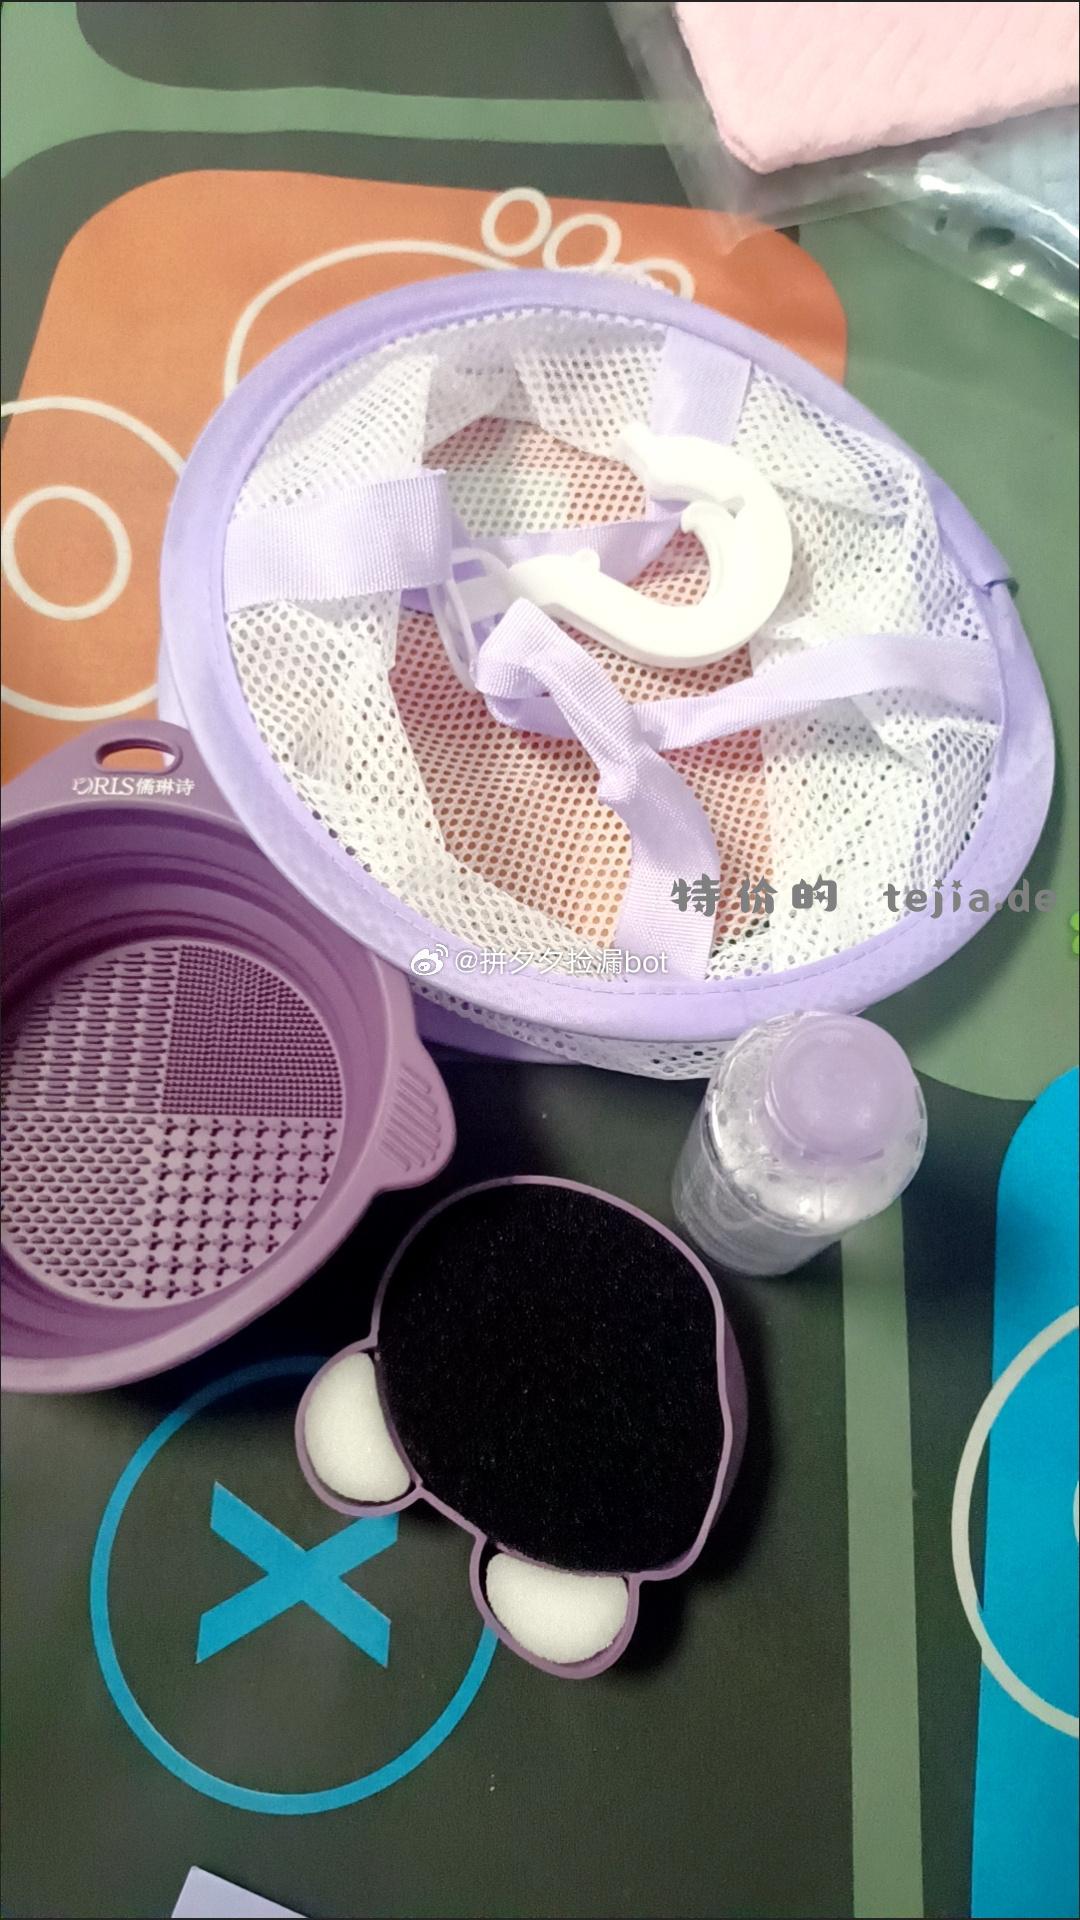 化妆刷清洁工具四件套 13.9 含清洁盒+清洁剂+晾晒网+折叠碗~ - 特价的